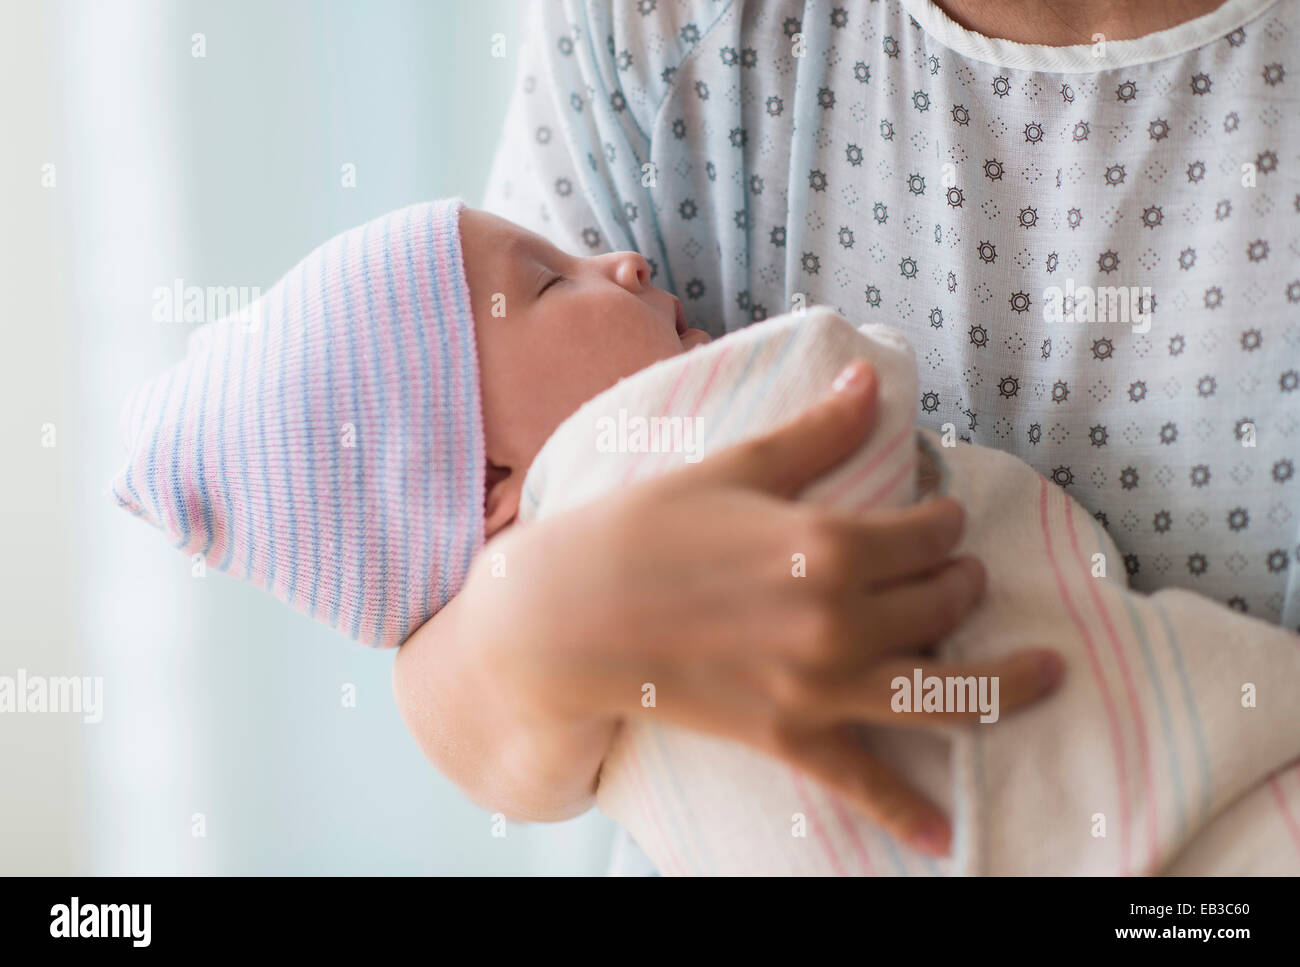 Madre sosteniendo asiáticos recién nacido en el hospital Foto de stock